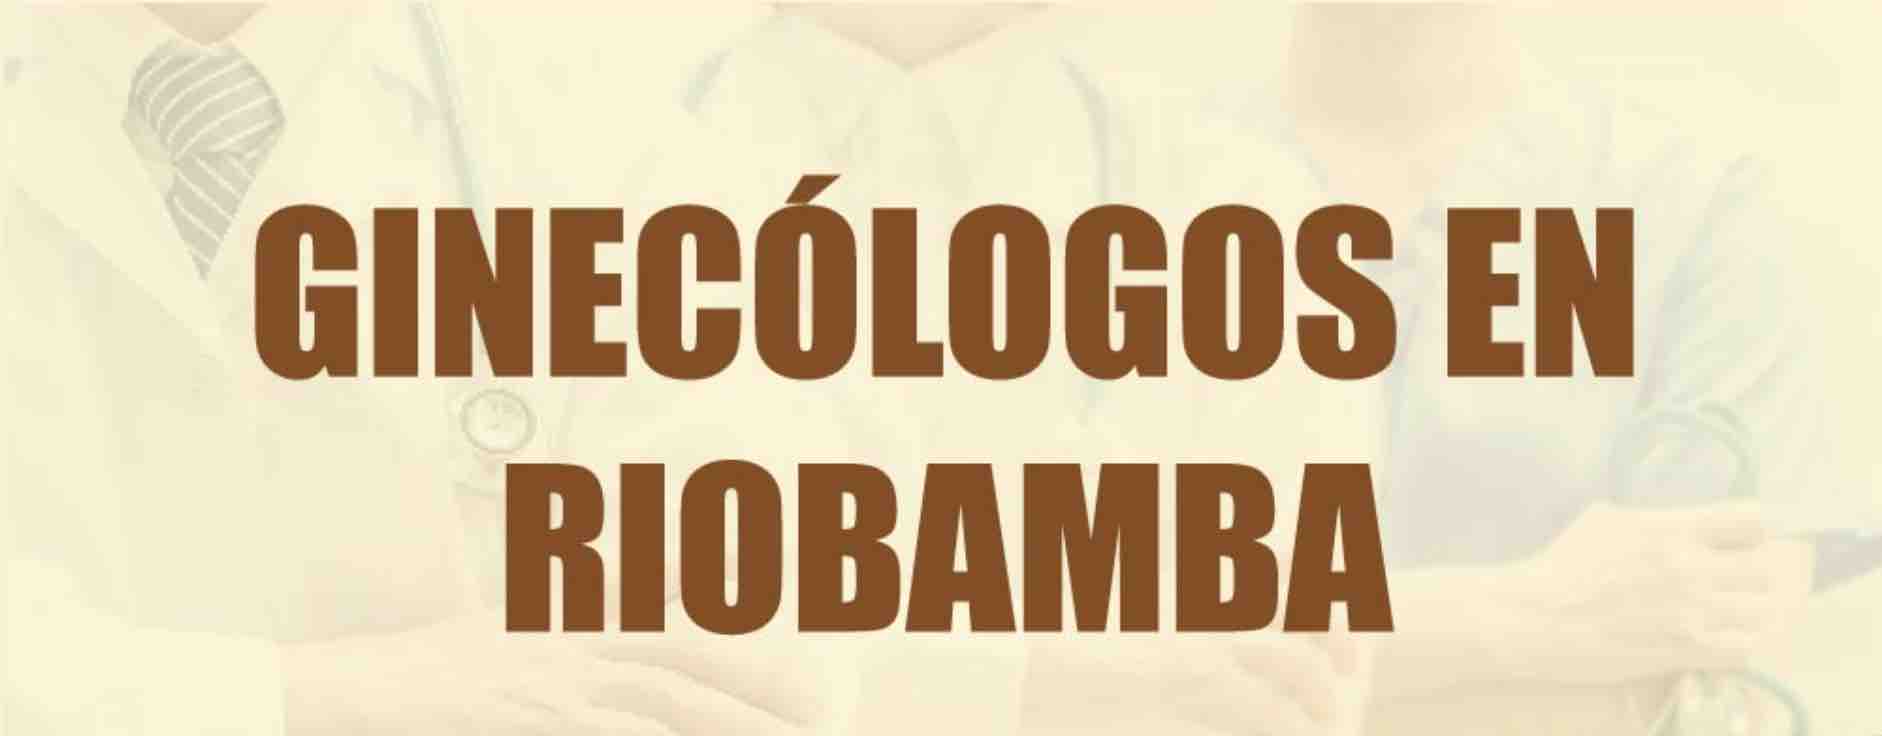 ginecologos riobamba